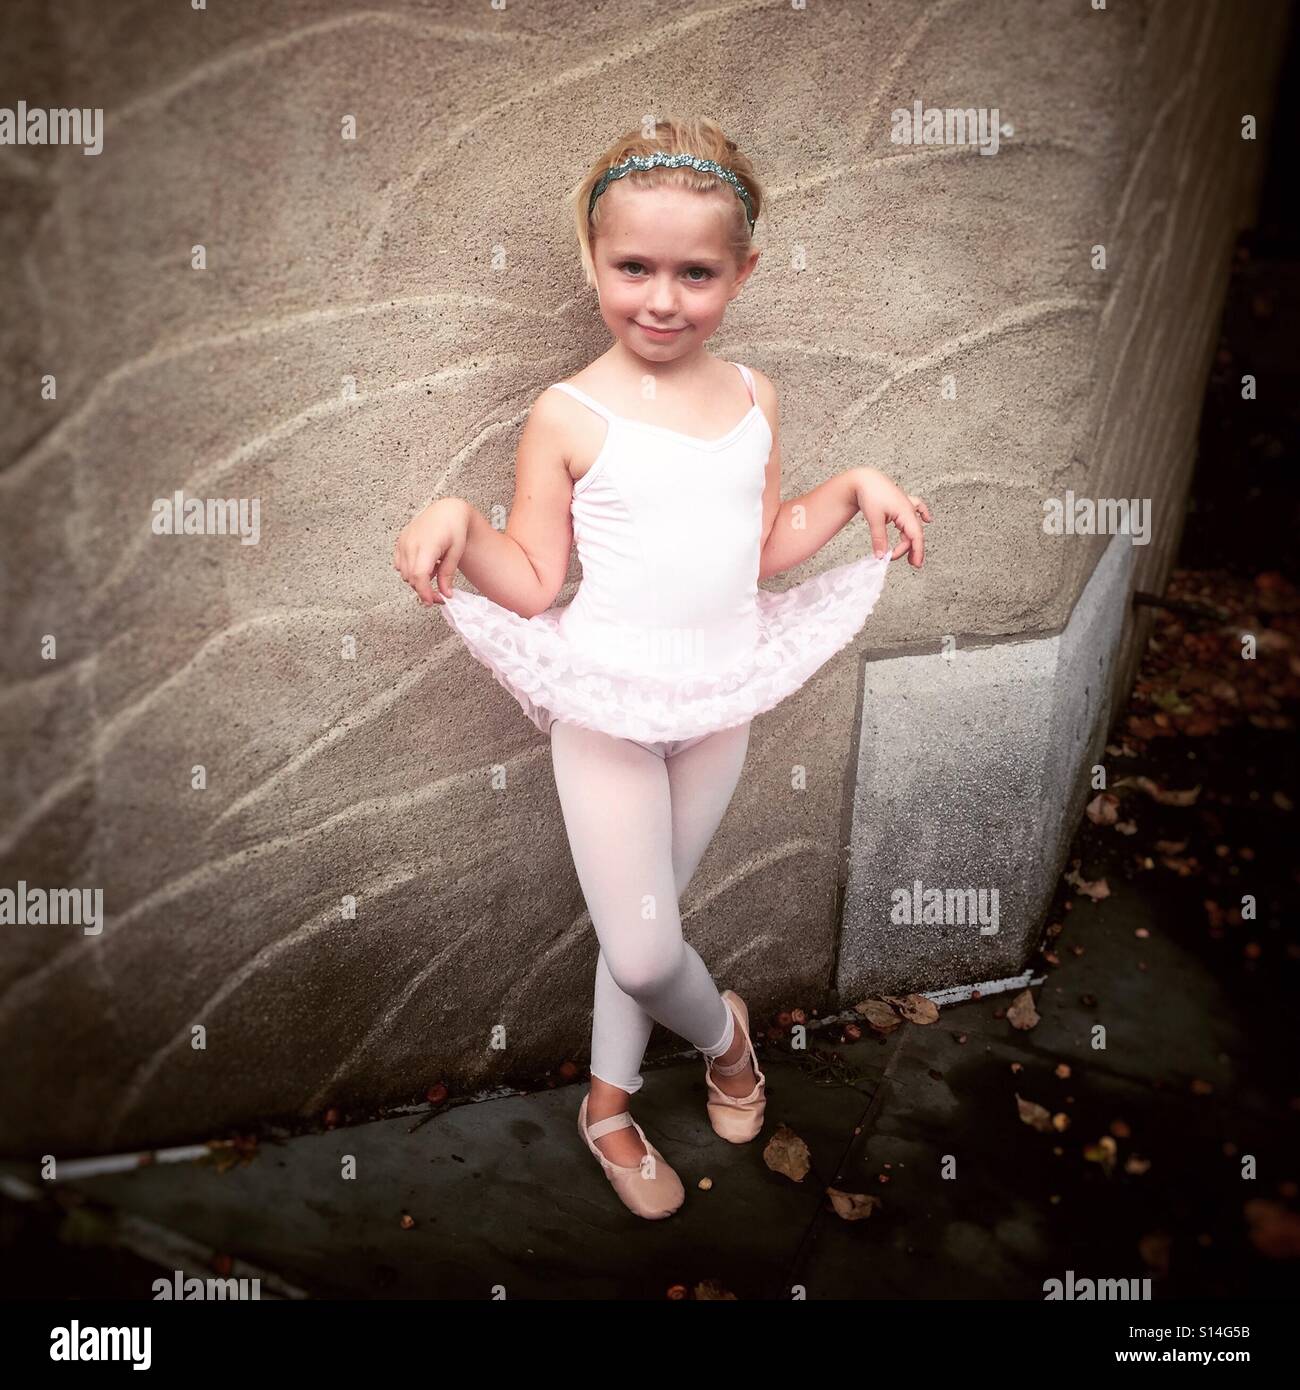 Young girl ballerina Stock Photo